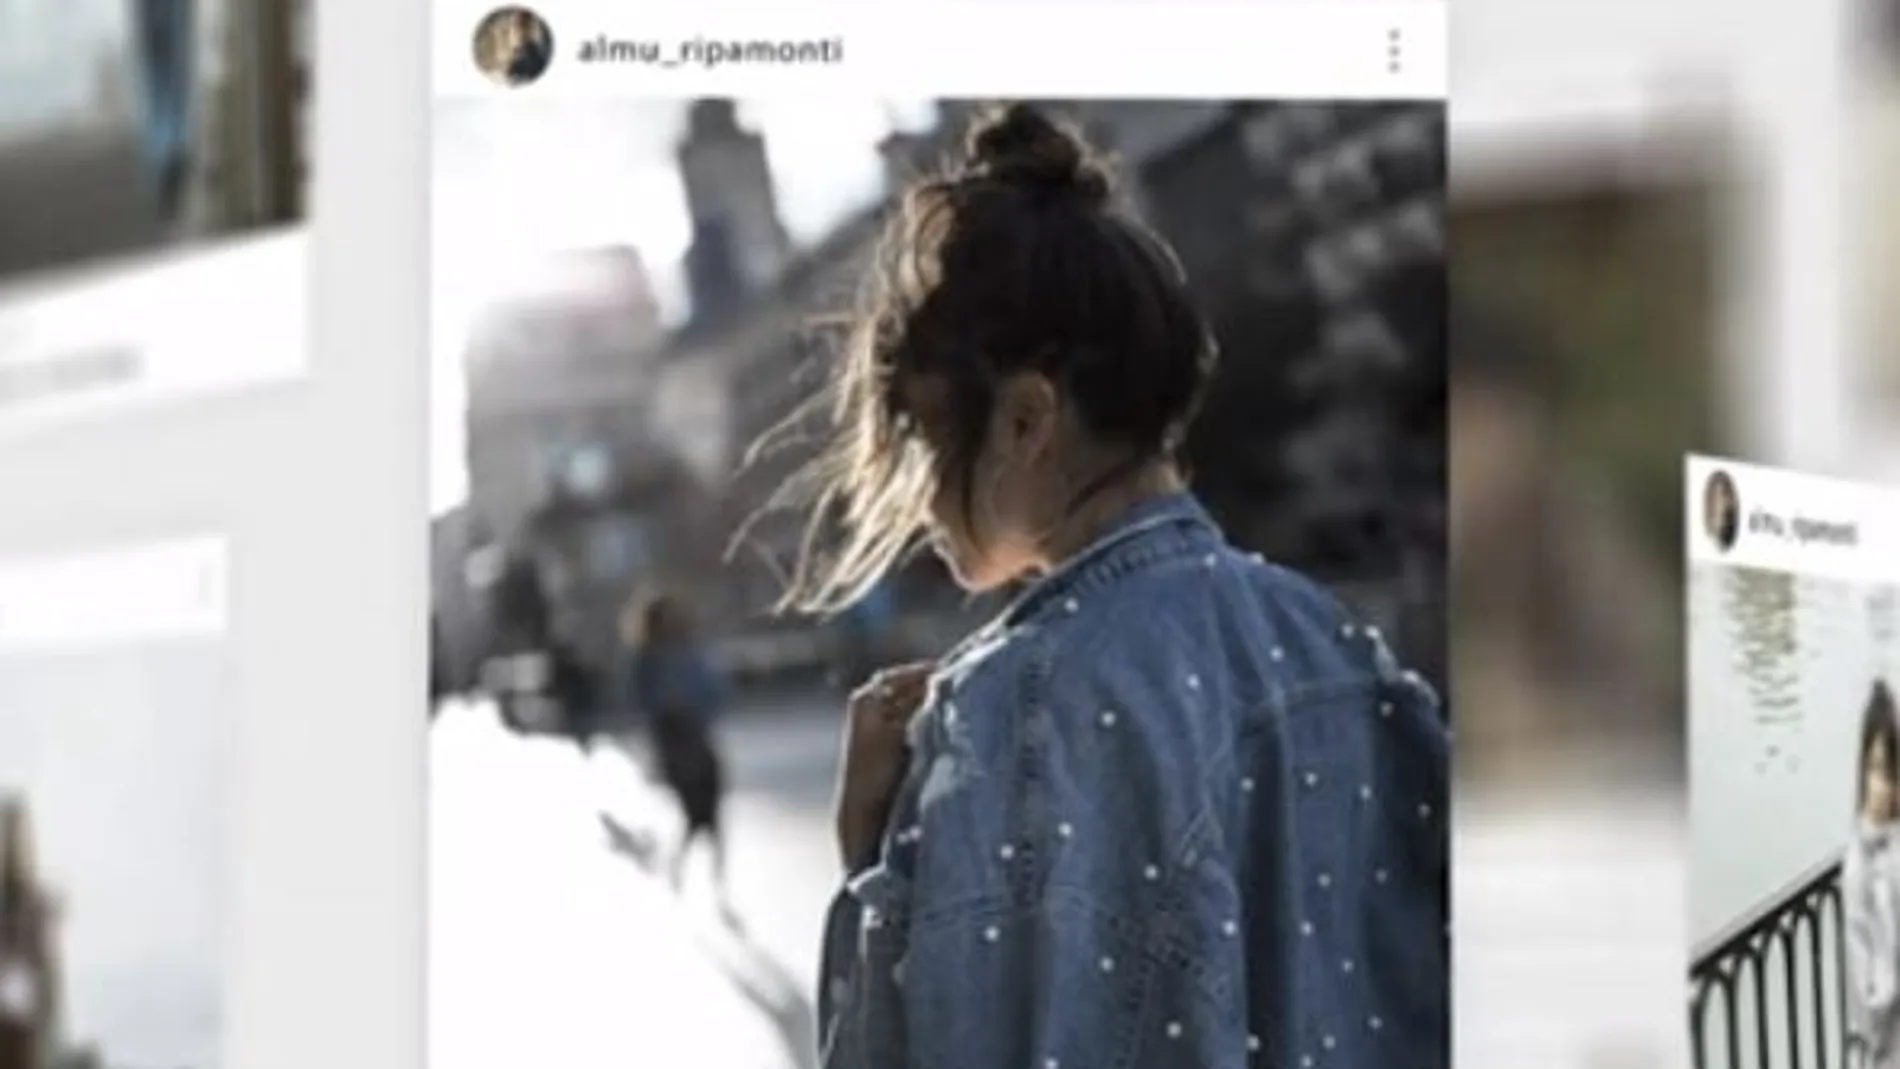 Almudena Ripamonti ha sido protagonista de el fraude de la Instagramer